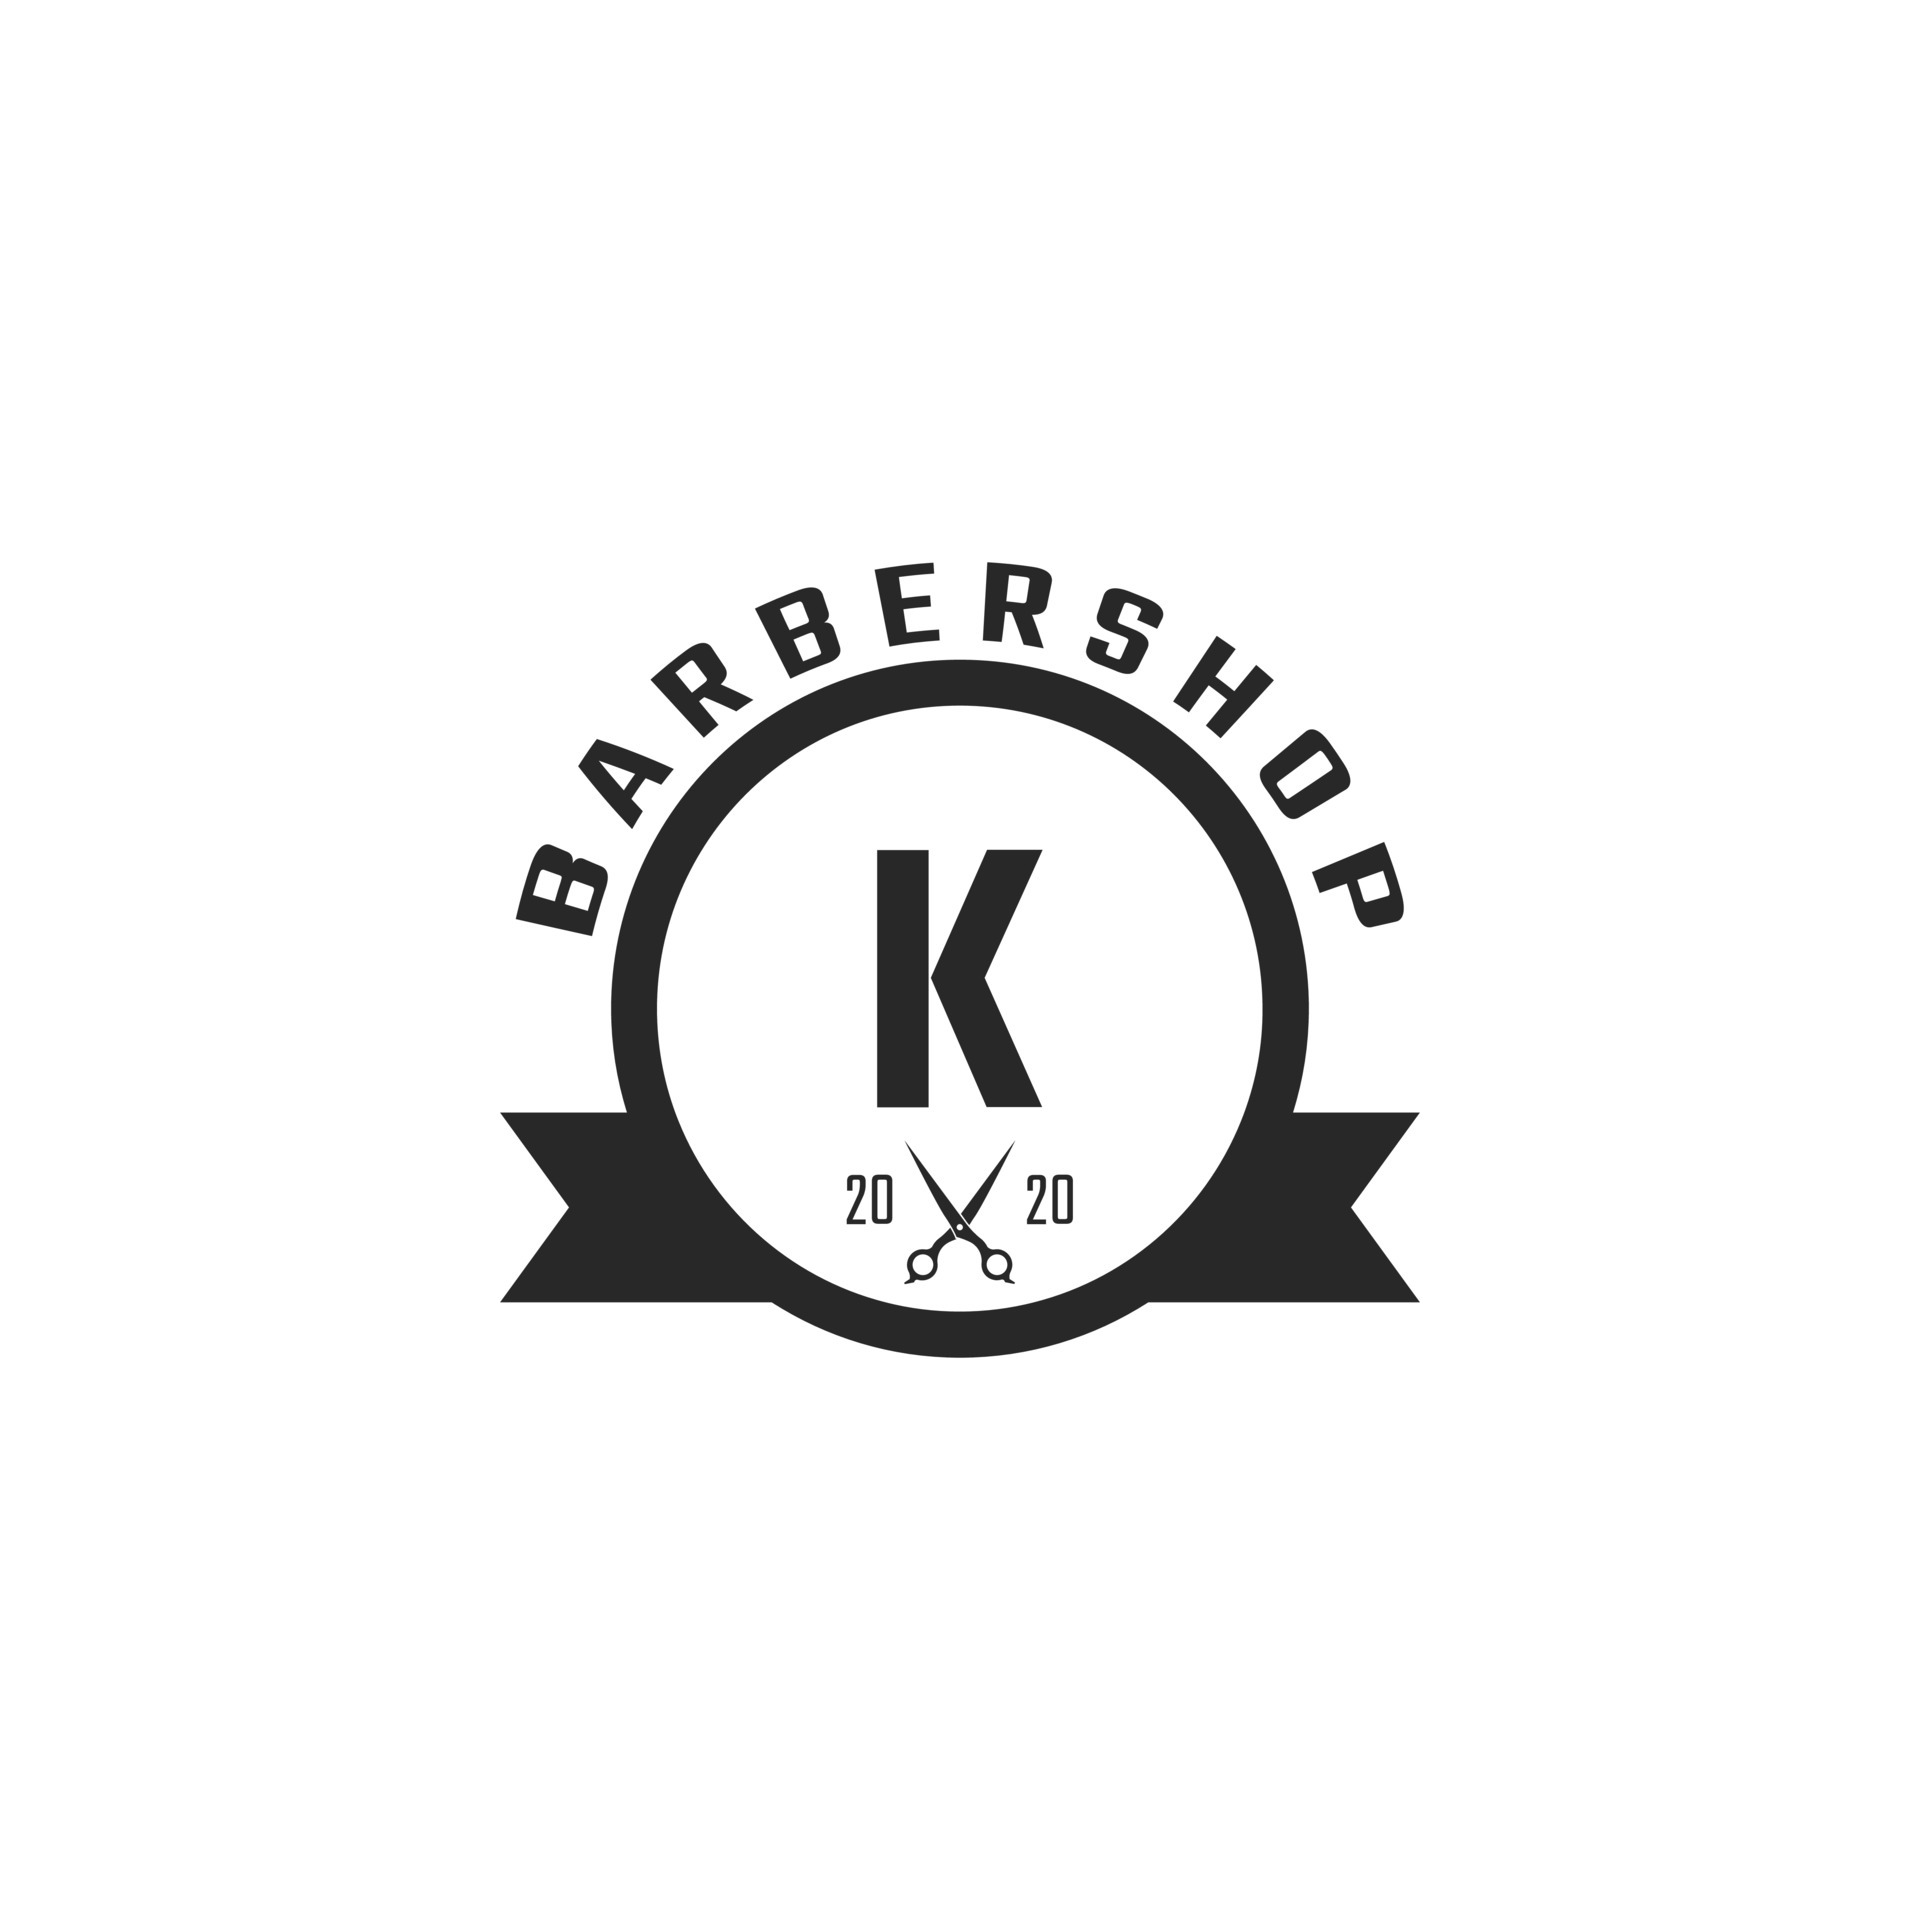 Letter K Vintage Barber Shop Badge and Logo Design Inspiration